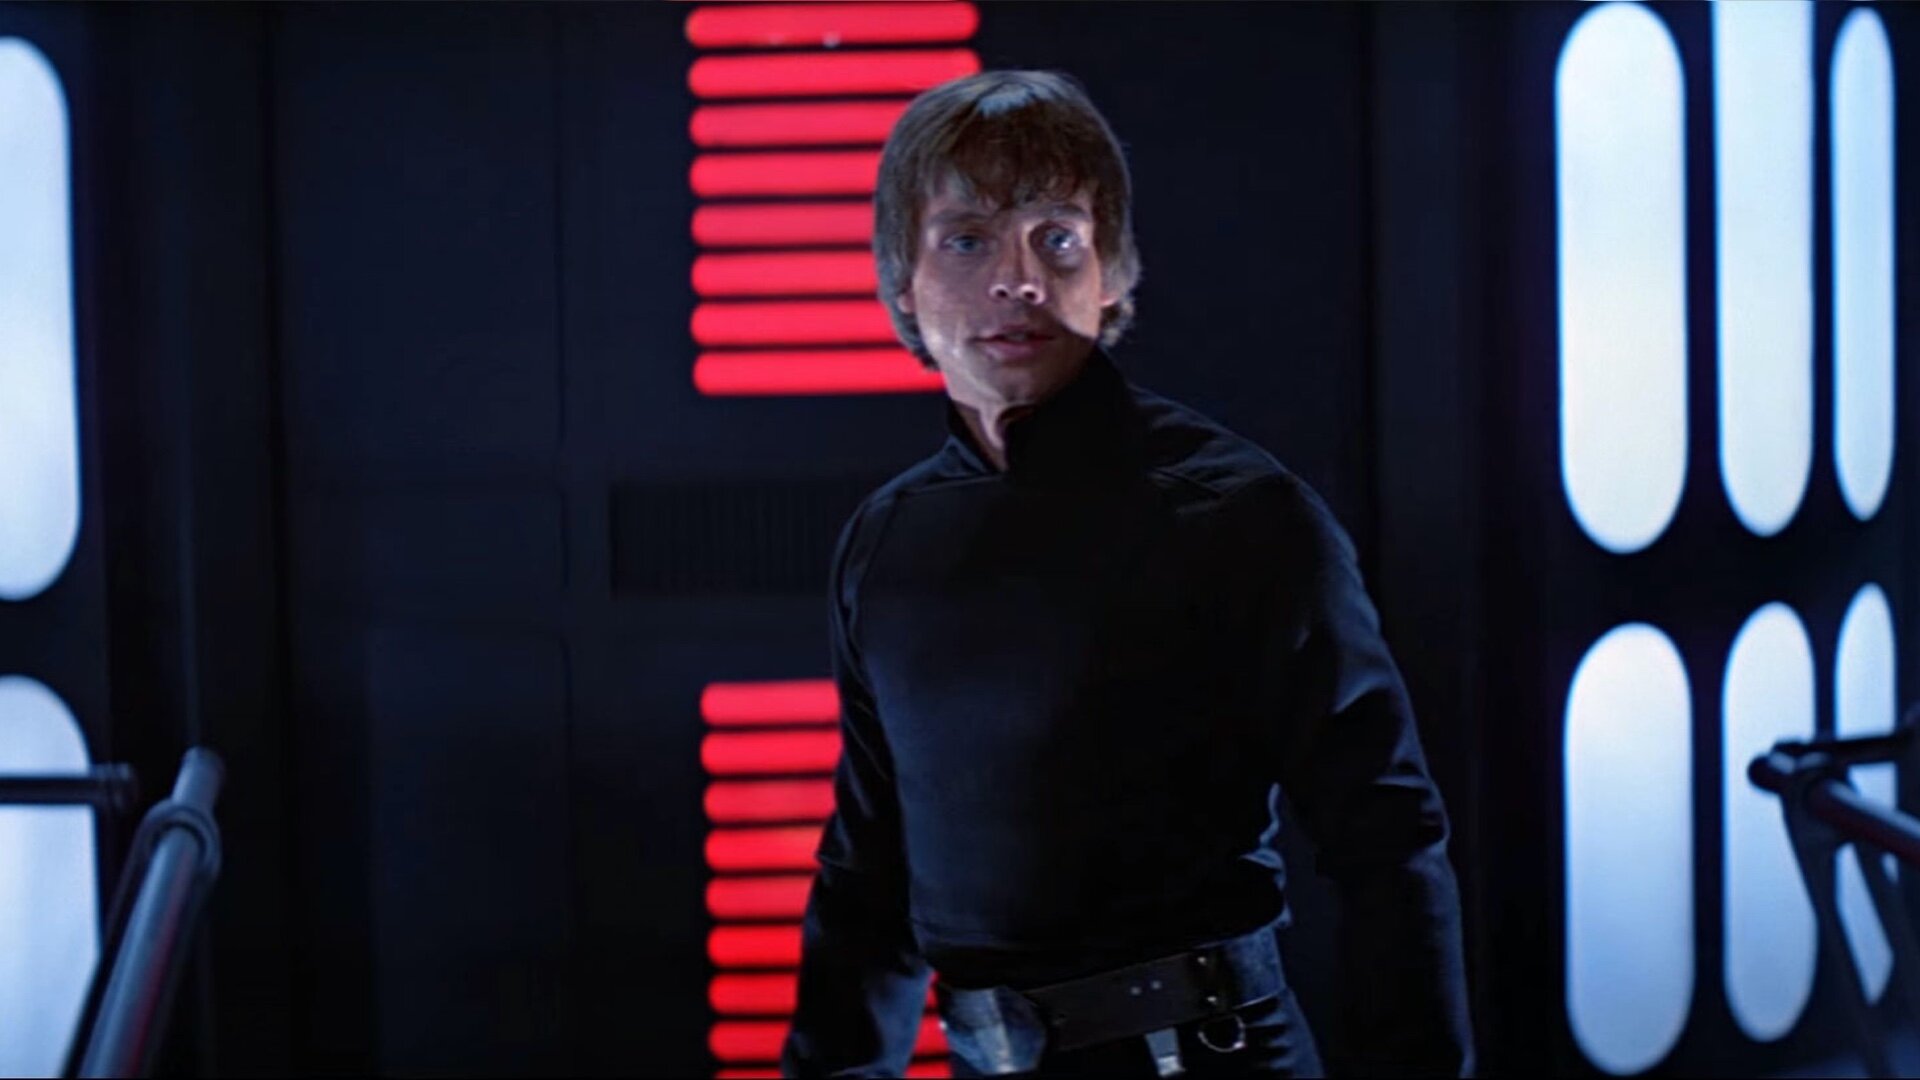 Mark Hamill would be fine if they recast Luke Skywalker